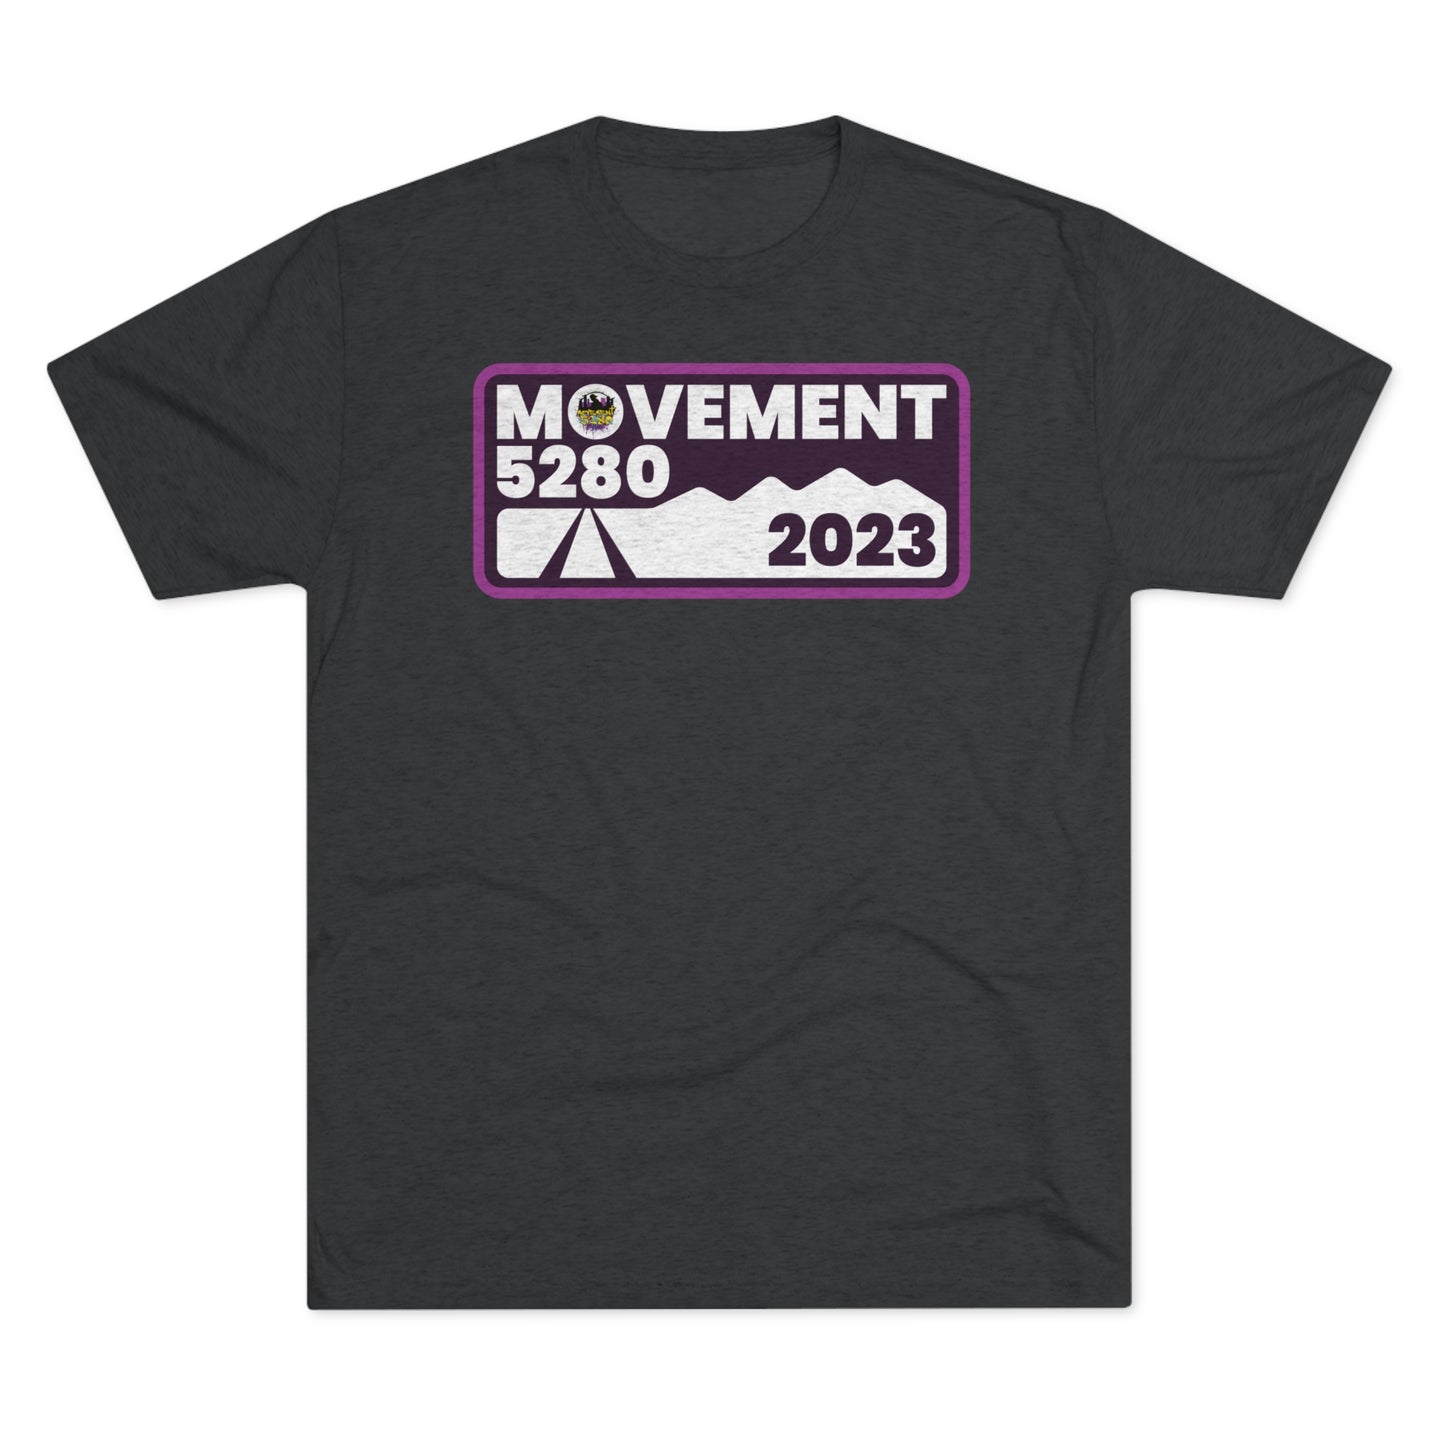 Movement 5280 2023 Design - Unisex Tri-Blend Crew Tee